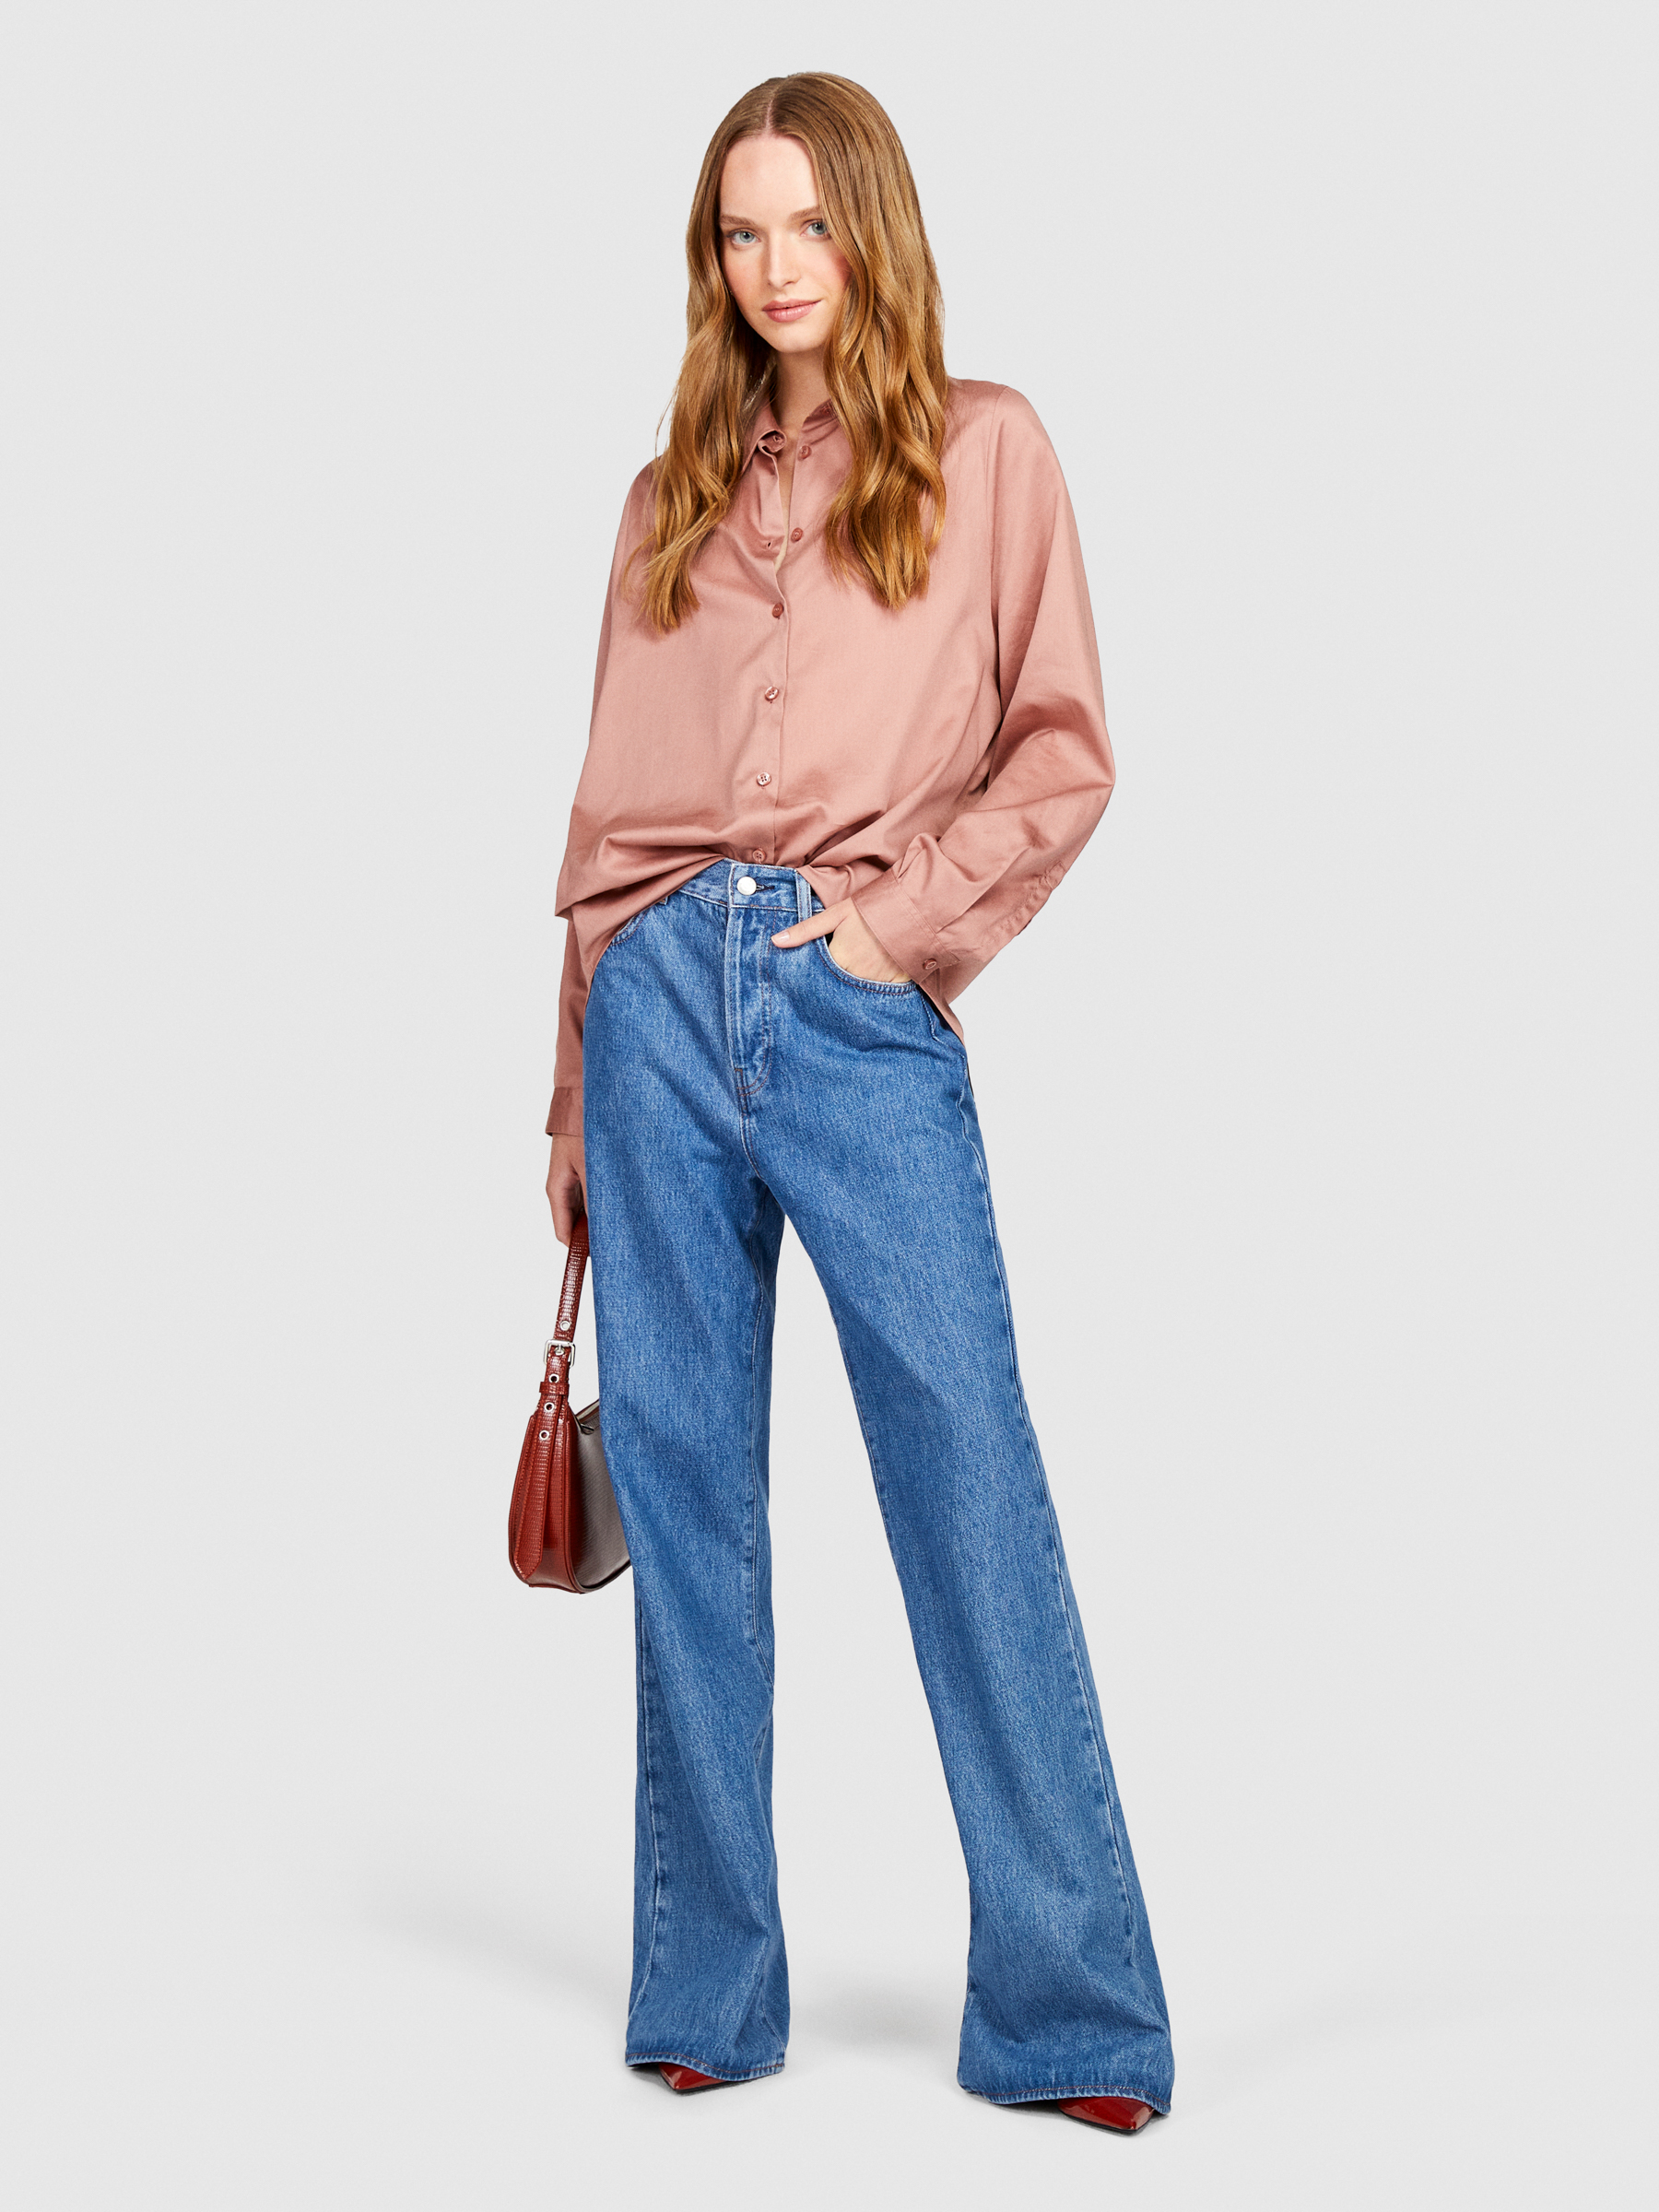 Sisley - Oversized Fit Shirt, Woman, Blush, Size: L